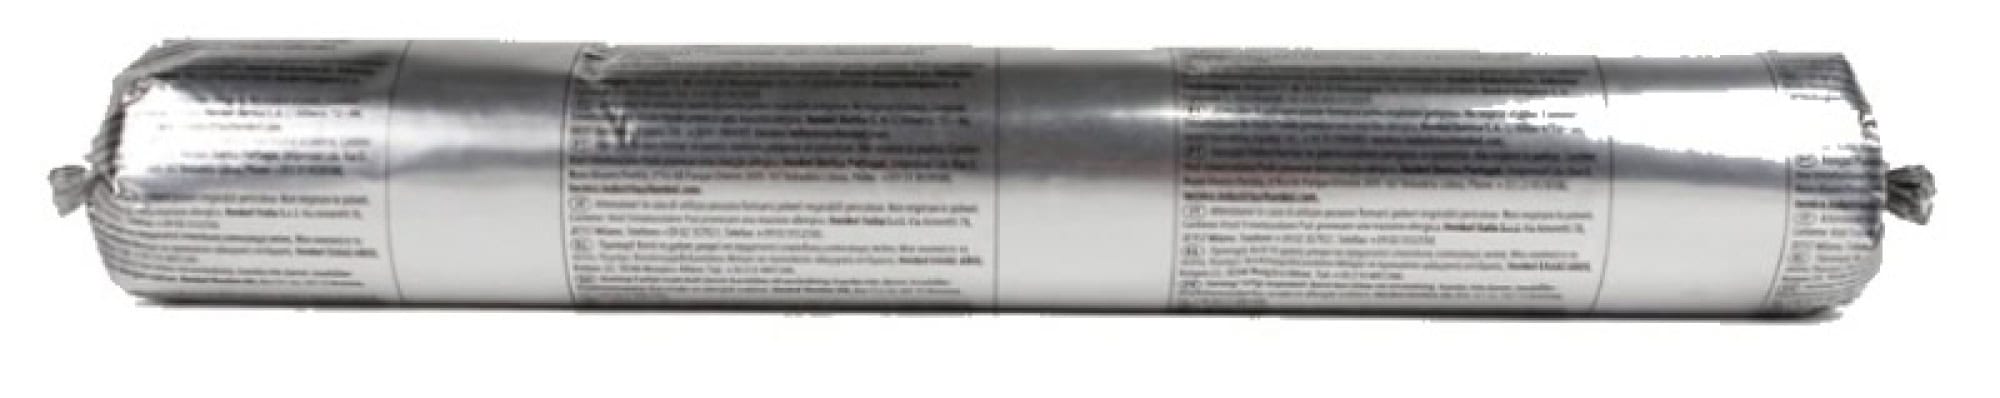 Henkel™ Teroson® Silanmodifizierter Polymer Kleb-/Dichtstoff MS 939, 570 ml Folienbeutel, Grau, Thixotrop, 1K, 2447723, Für mechanische Sicherheit